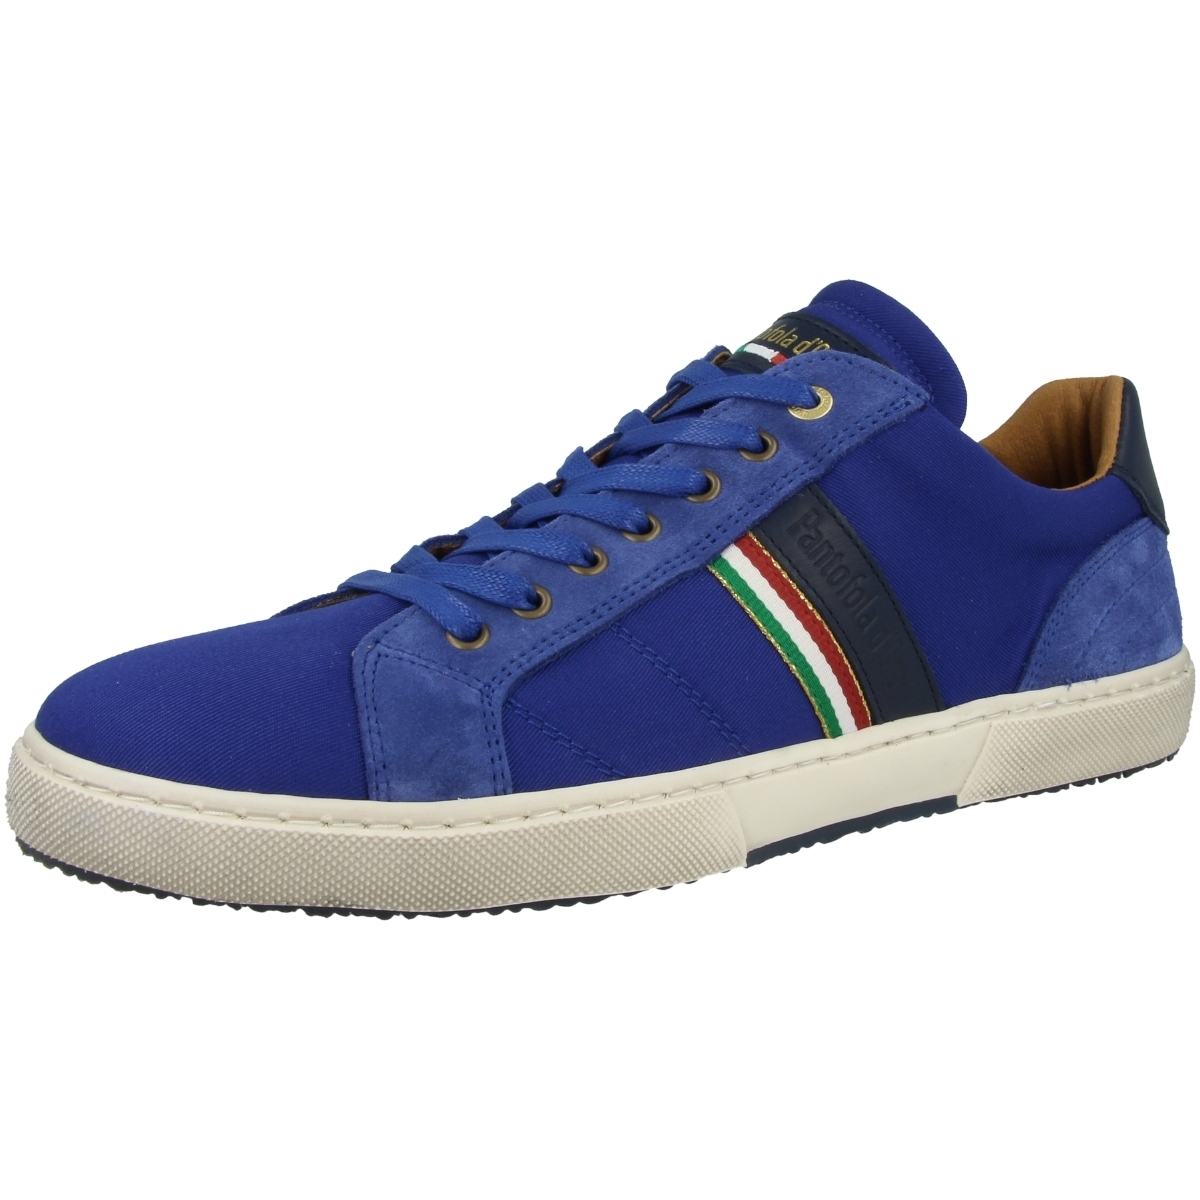 Pantofola d Oro Modena Canvas Uomo Low Sneaker